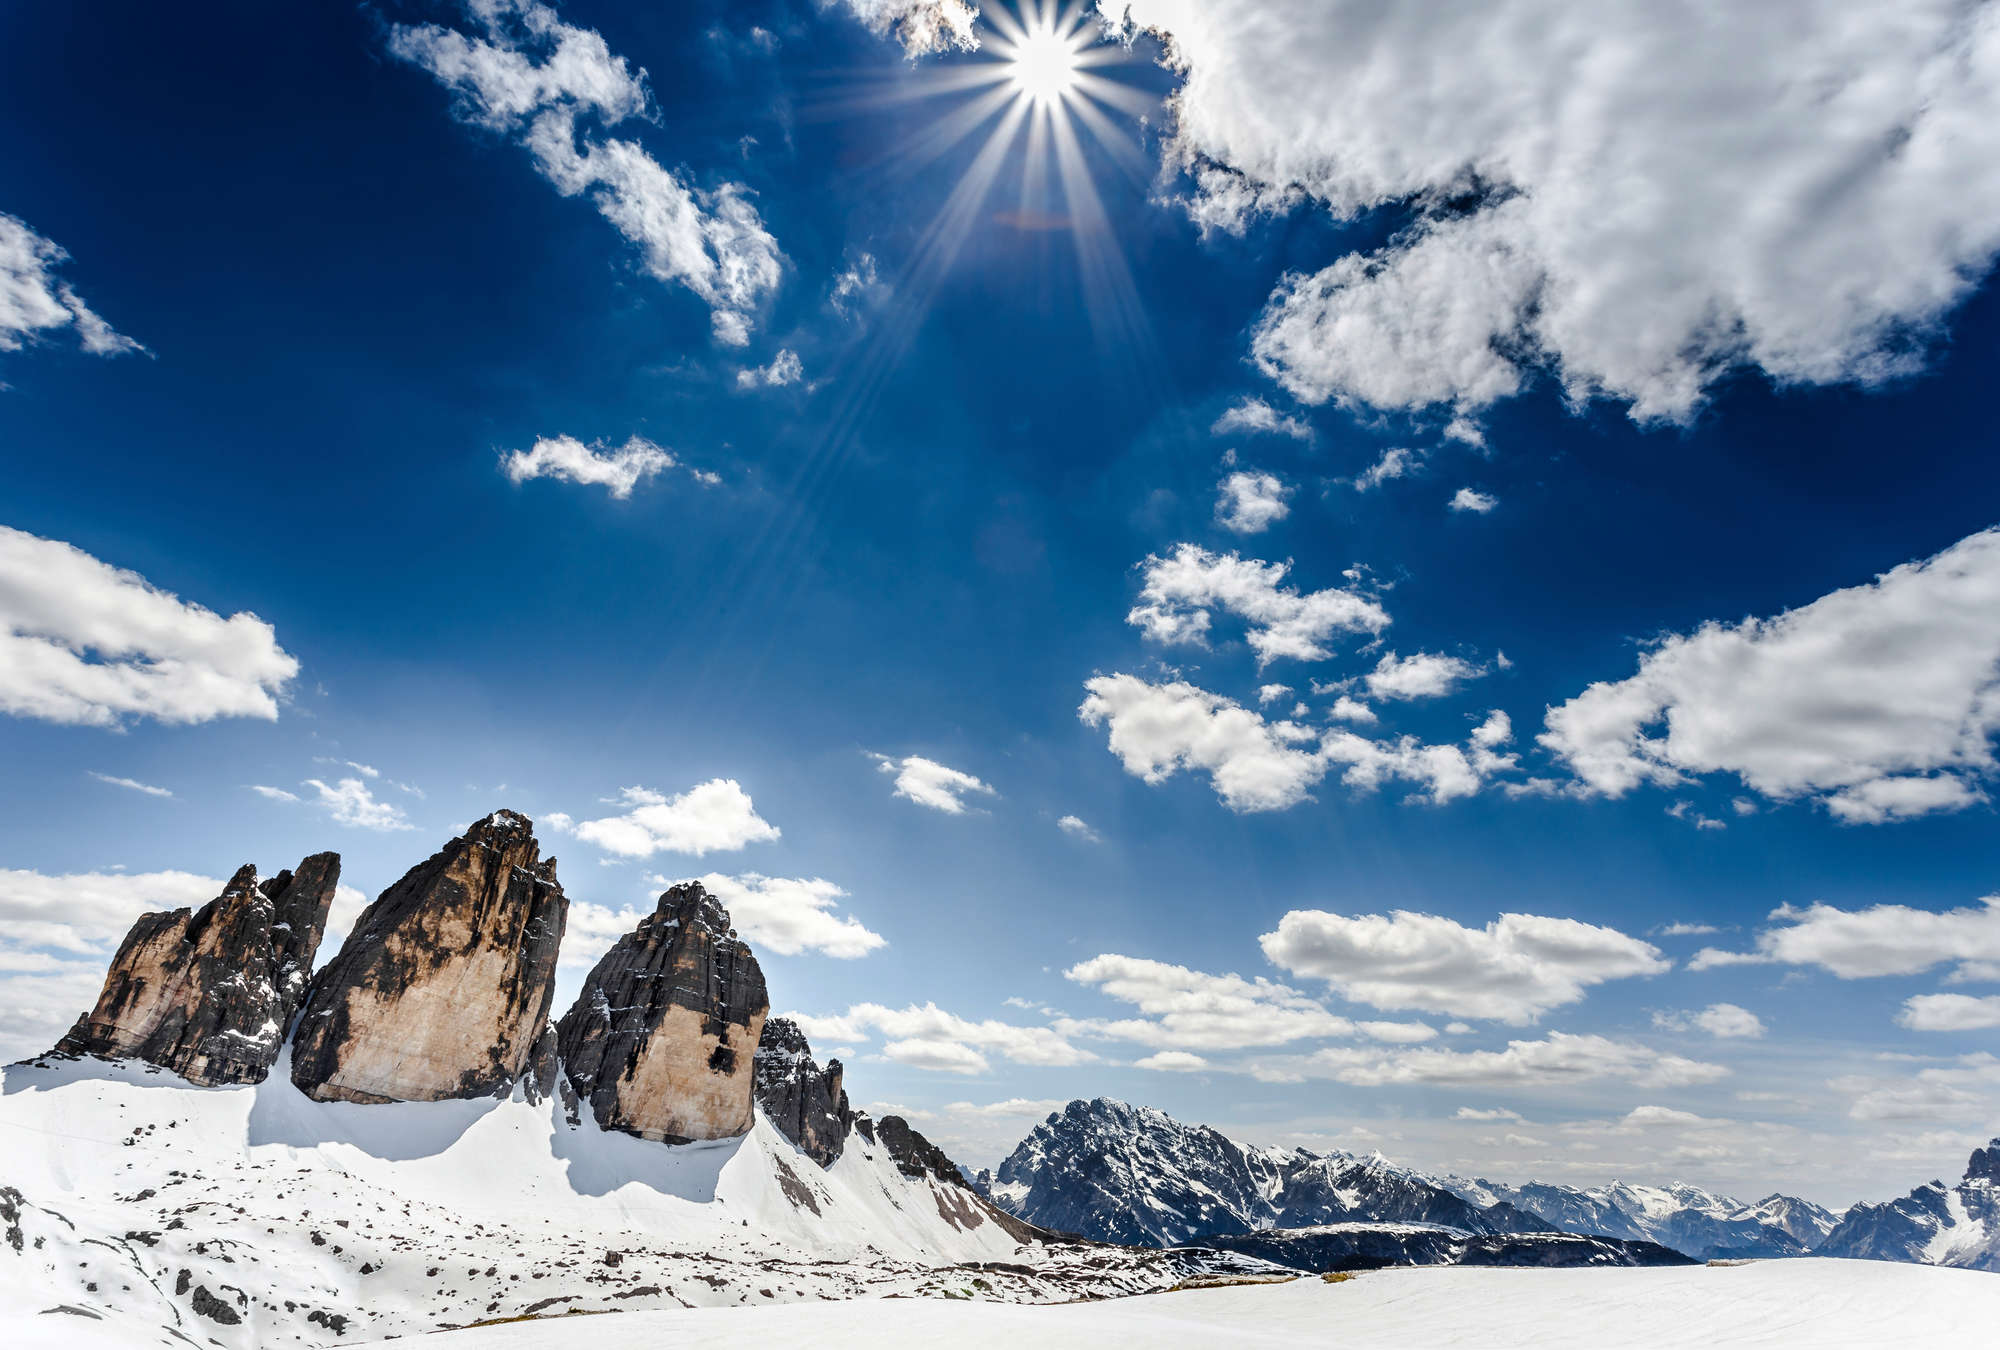             Papier peint panoramique Paysage hivernal de montagne avec vue sur les Trois Cimets
        